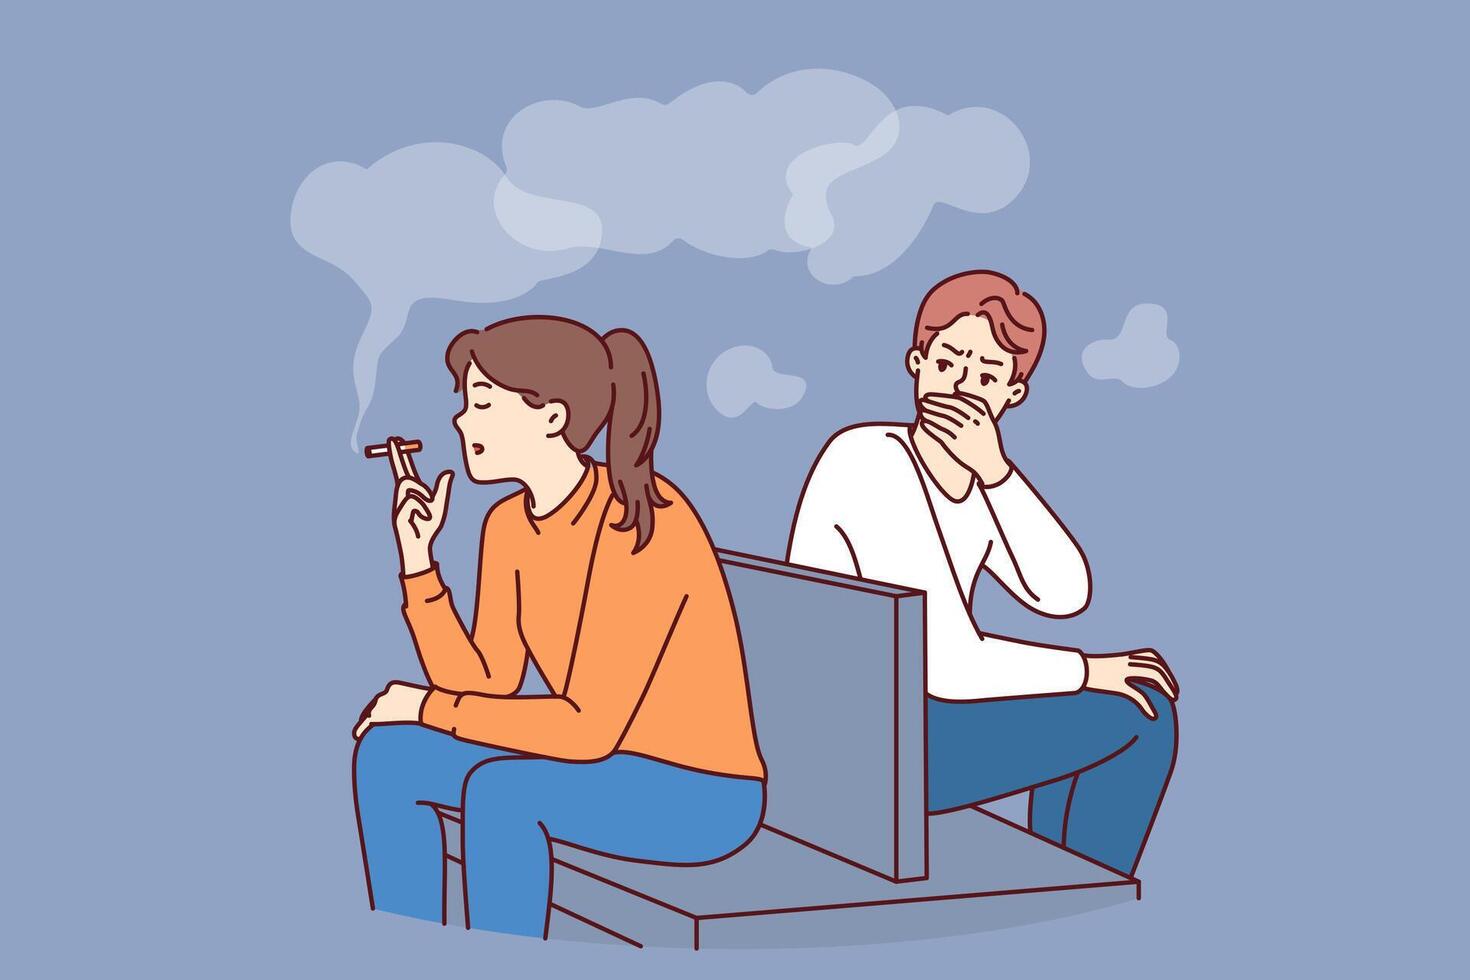 femme fume séance dans Publique endroit et causes inconvénient à homme, fabrication lui passif fumeur vecteur